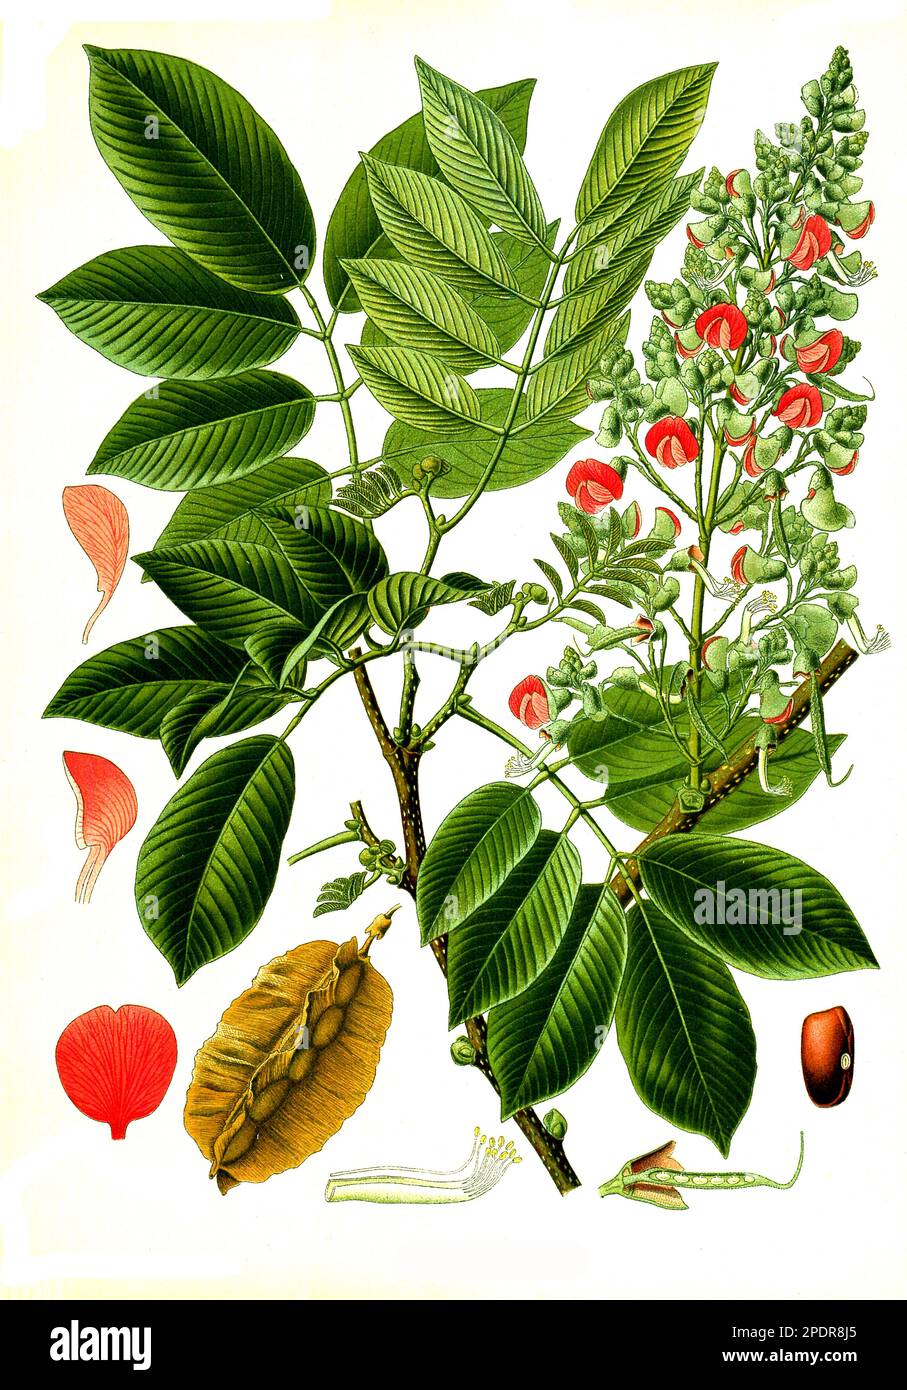 Heilpflanze, Piscidia erythrina, gemeiner Fischfänger, Pfeilgiftbaum, Historisch, digital restaurierte Reproduktion von einer Vorlage aus dem 18. Jahrhundert Stock Photo